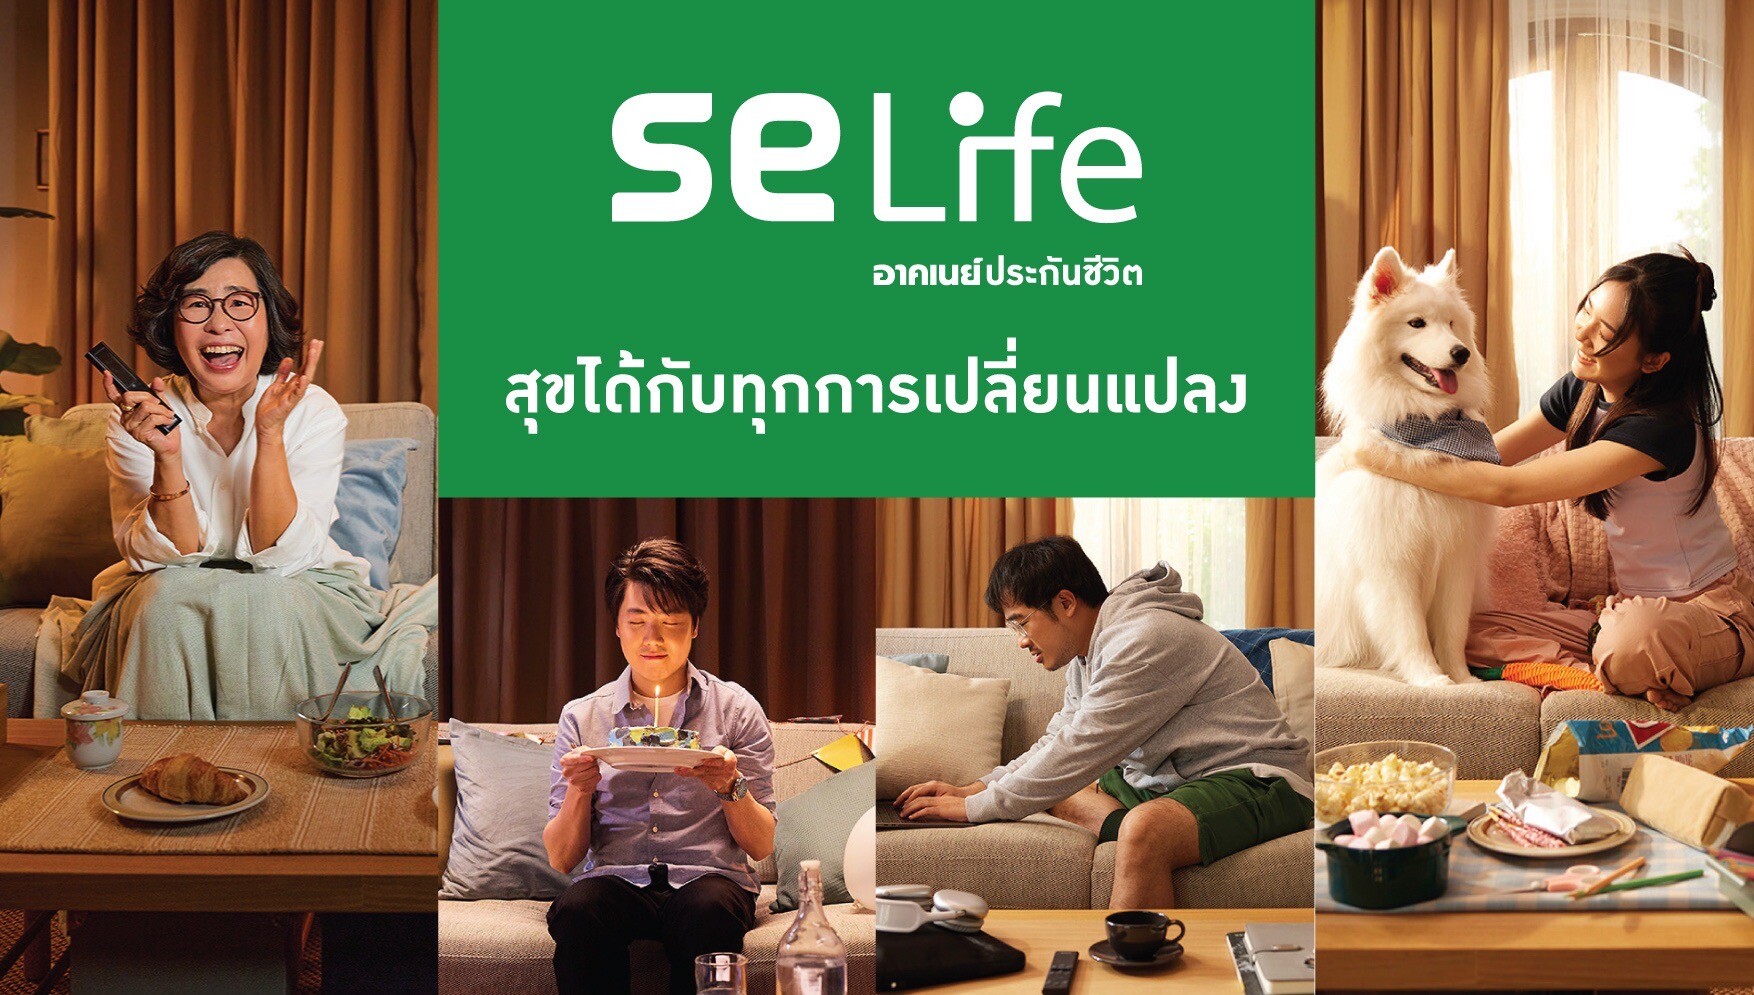 "SE Life อาคเนย์ประกันชีวิต" ปรับจุดยืนทางการตลาด ชูภาพลักษณ์ สร้างคุณค่า เพื่อลูกค้าและคนไทย "สุขได้กับทุกการเปลี่ยนแปลง"